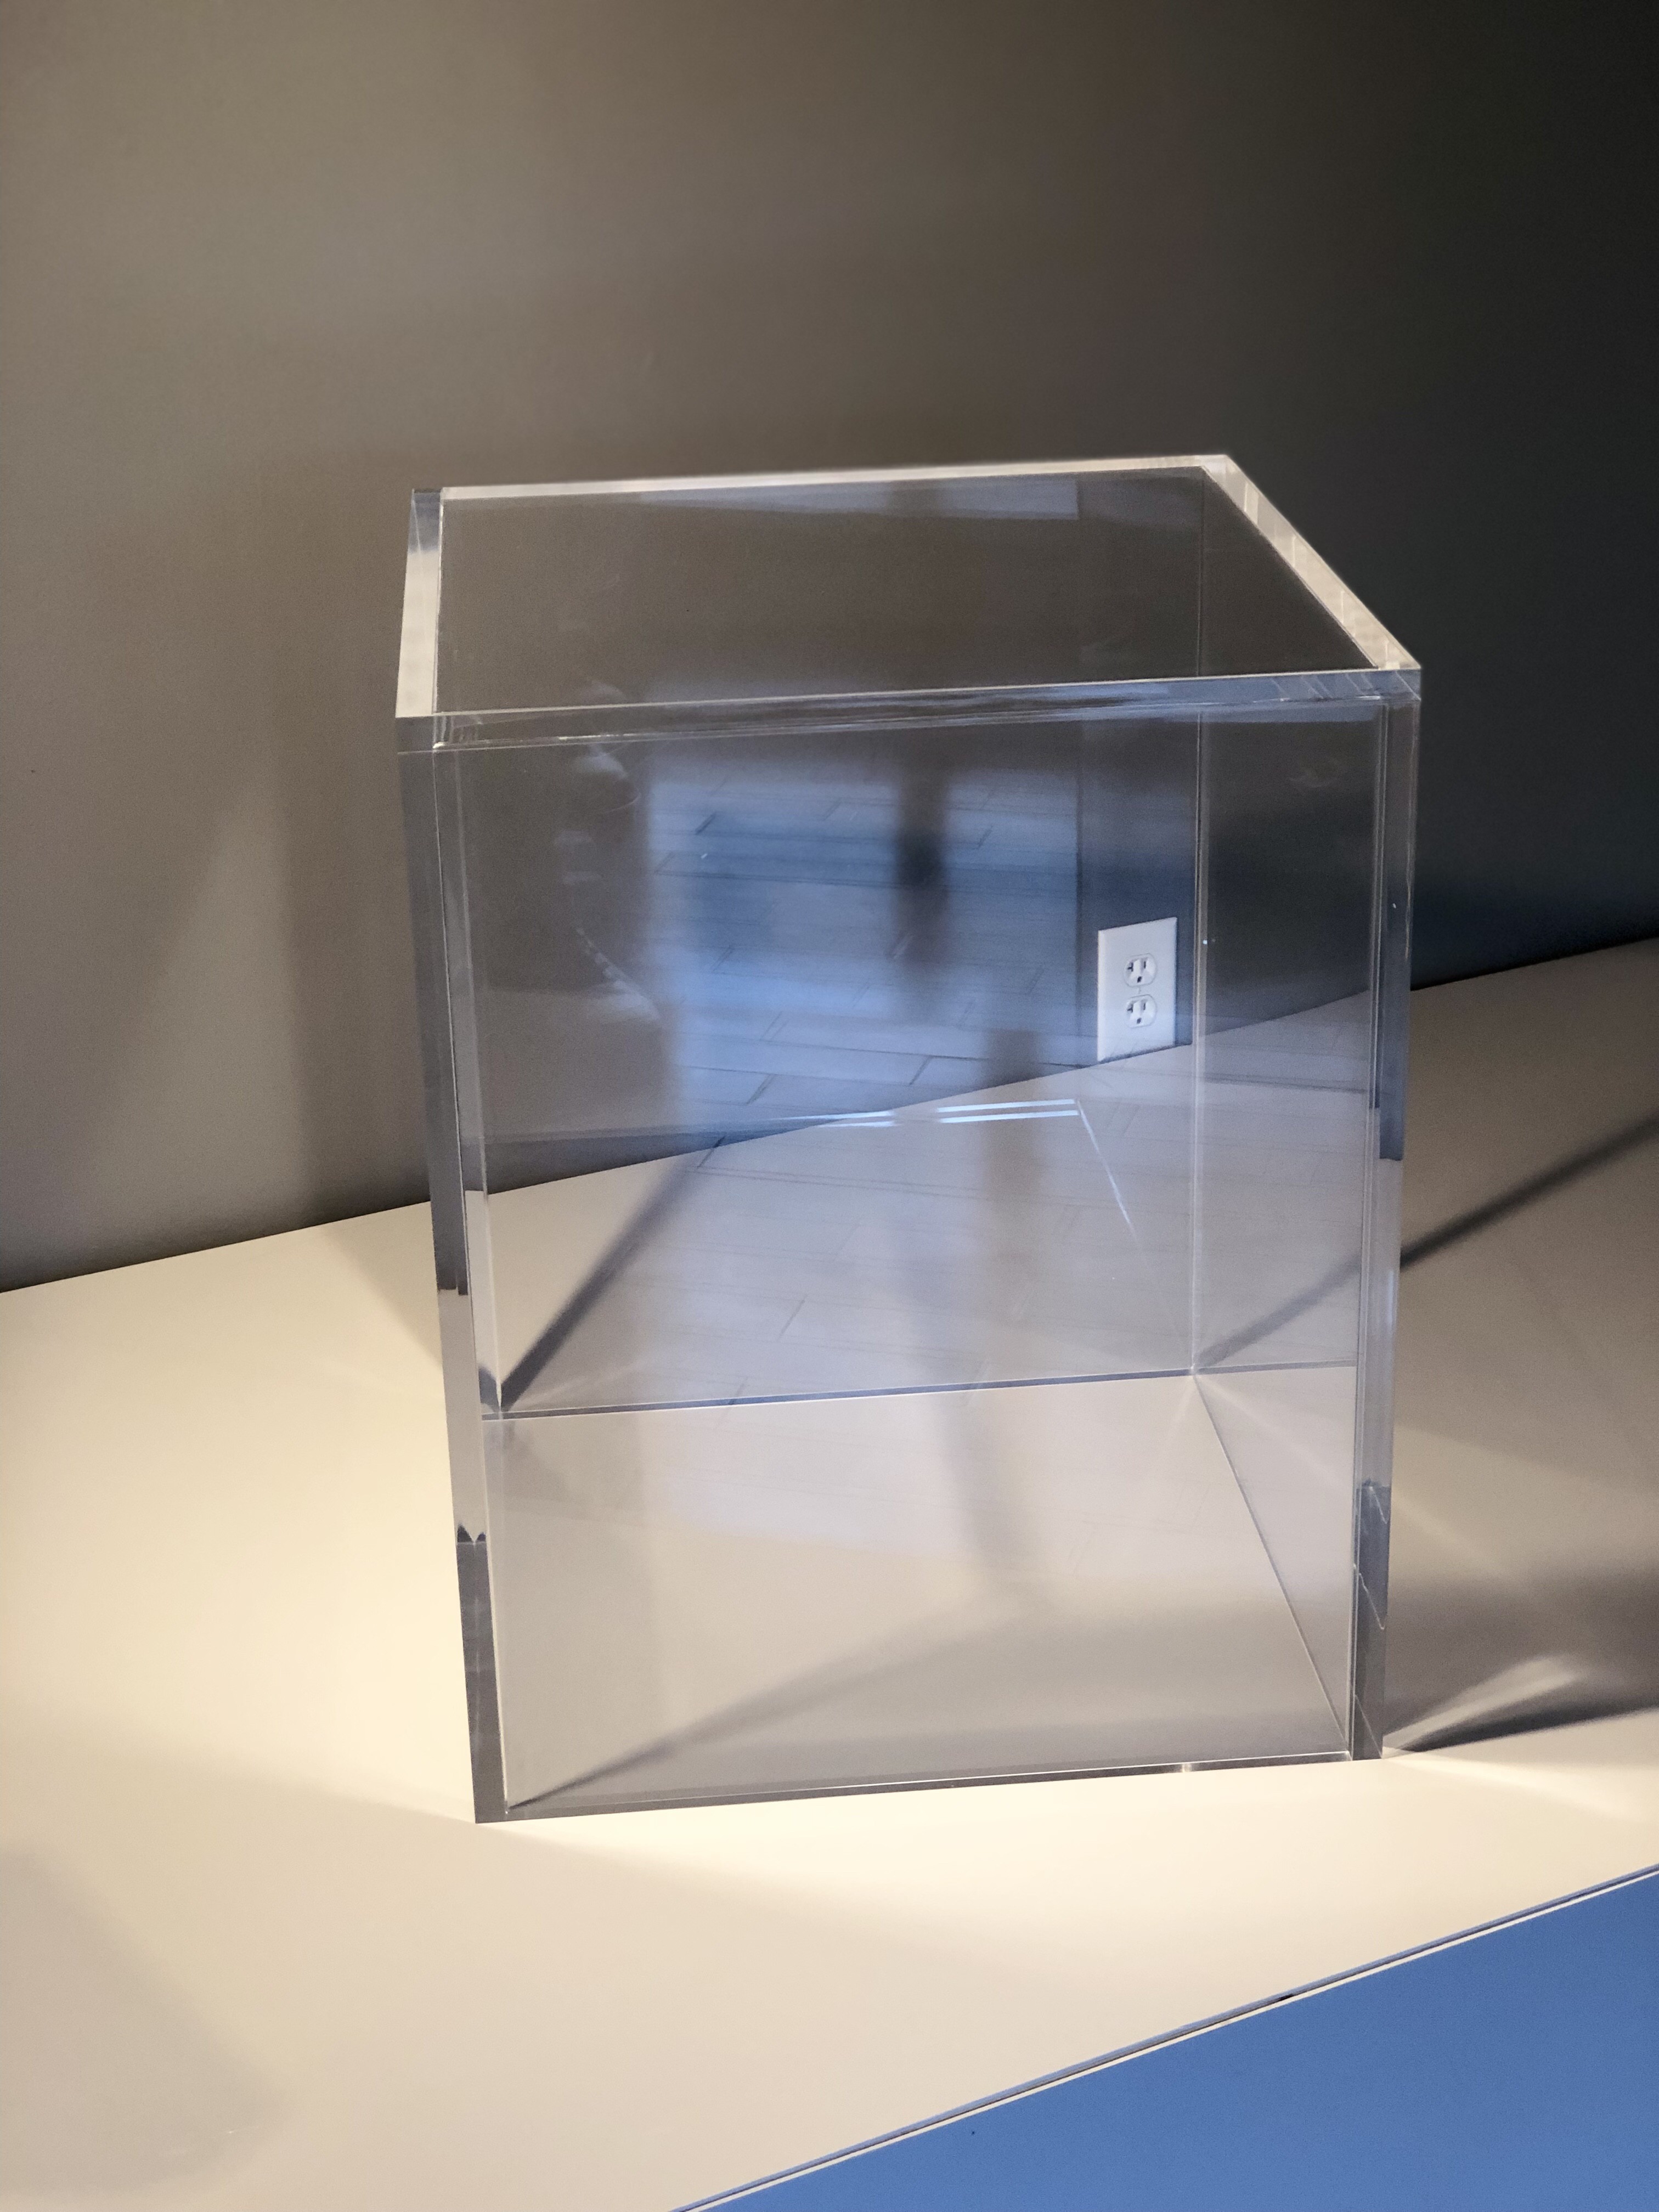 Does Plexiglass Insulate Better Than Glass?